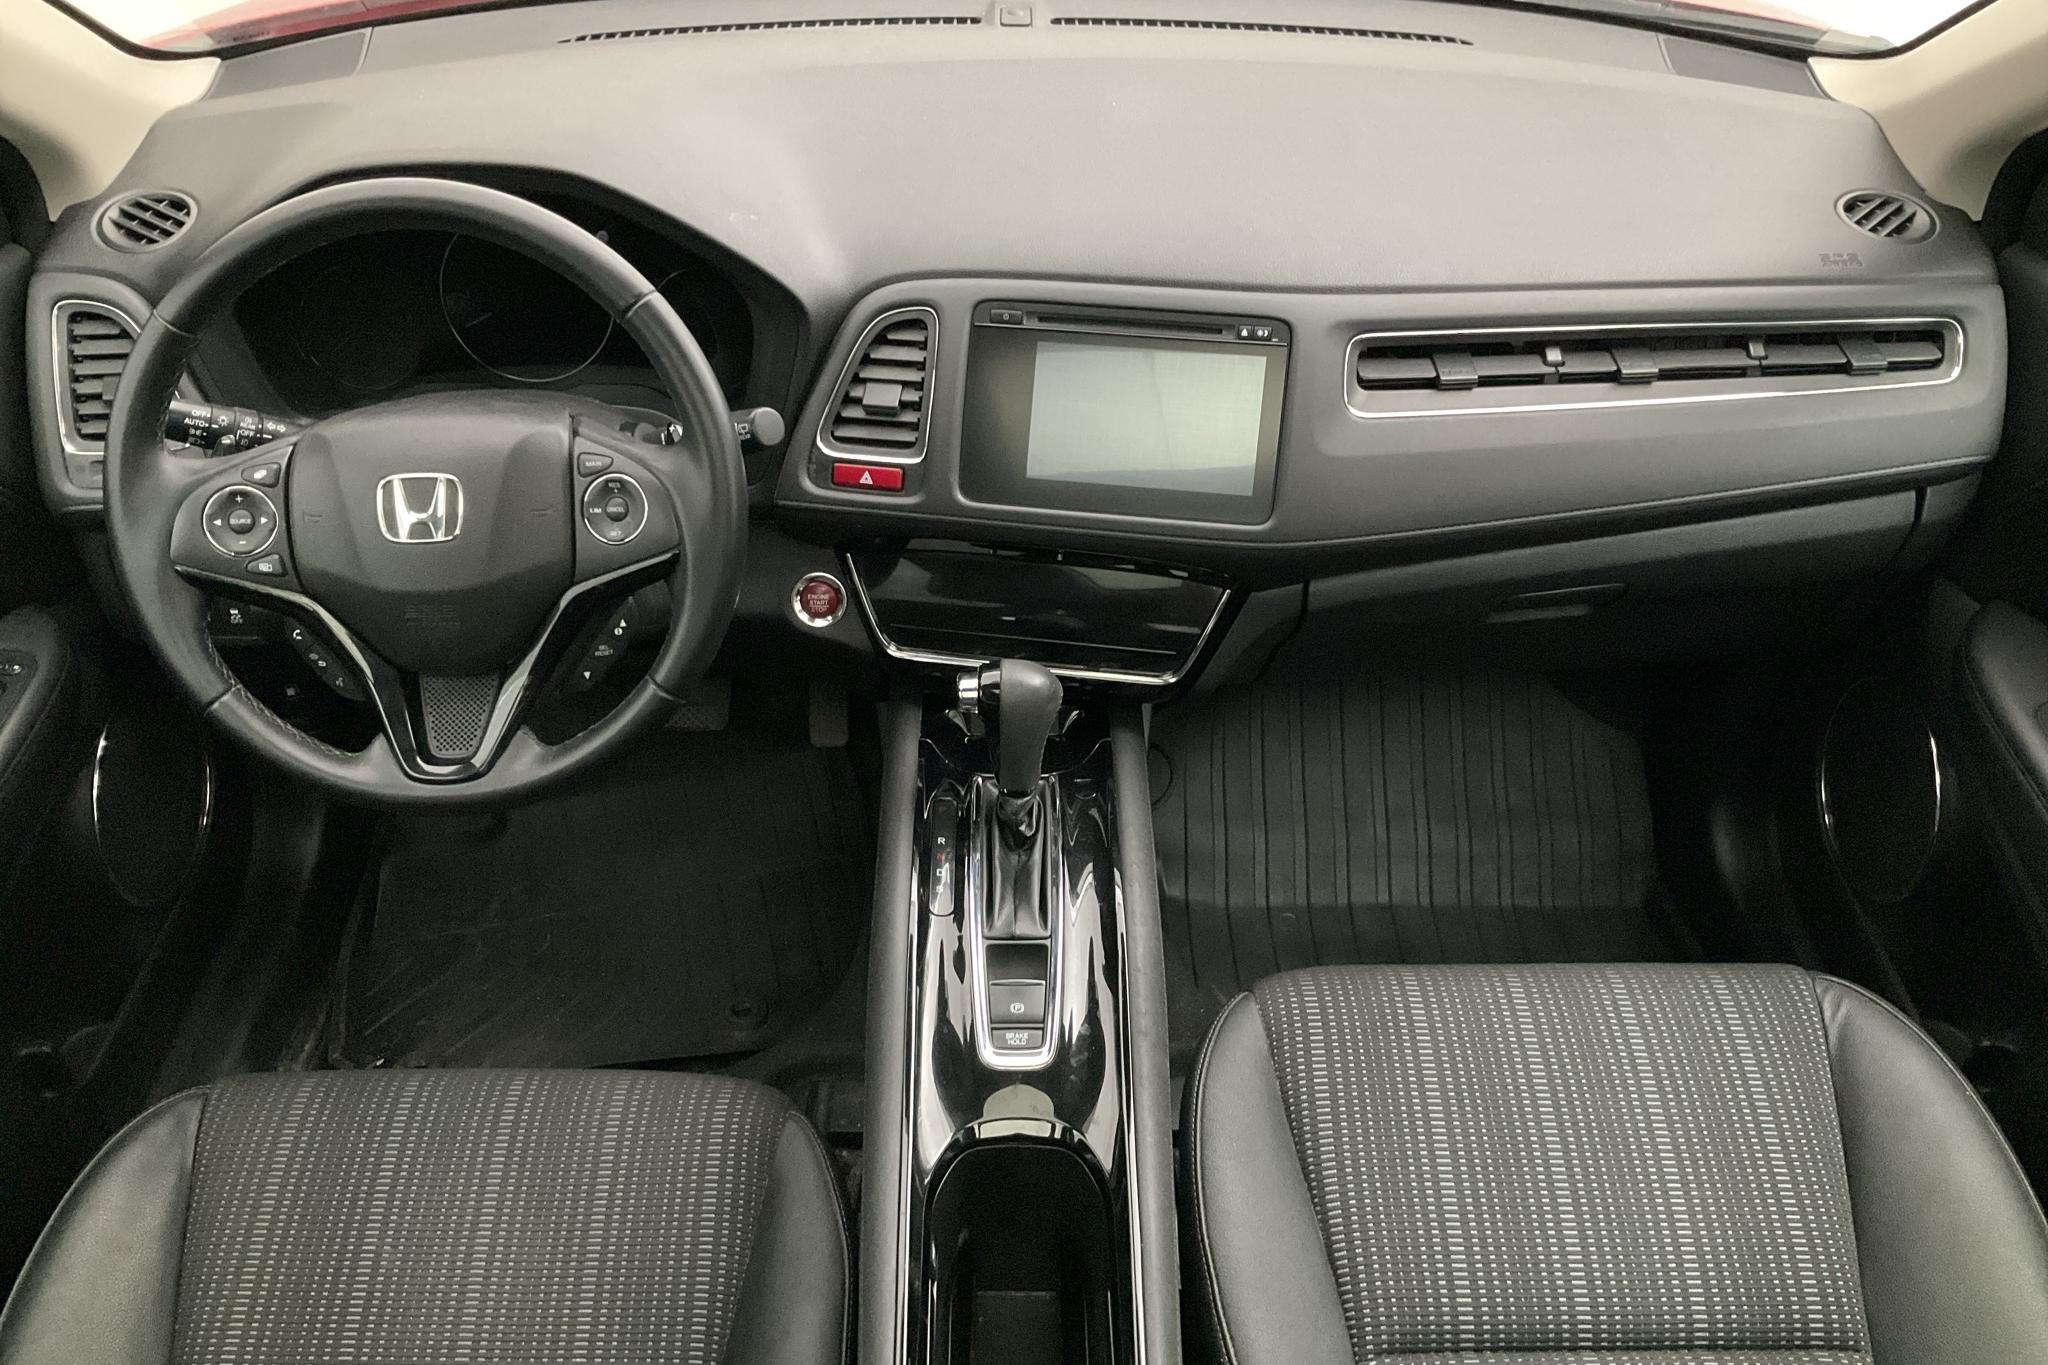 Honda HR-V 1.5 2WD (130hk) - 34 440 km - Automatyczna - czerwony - 2017